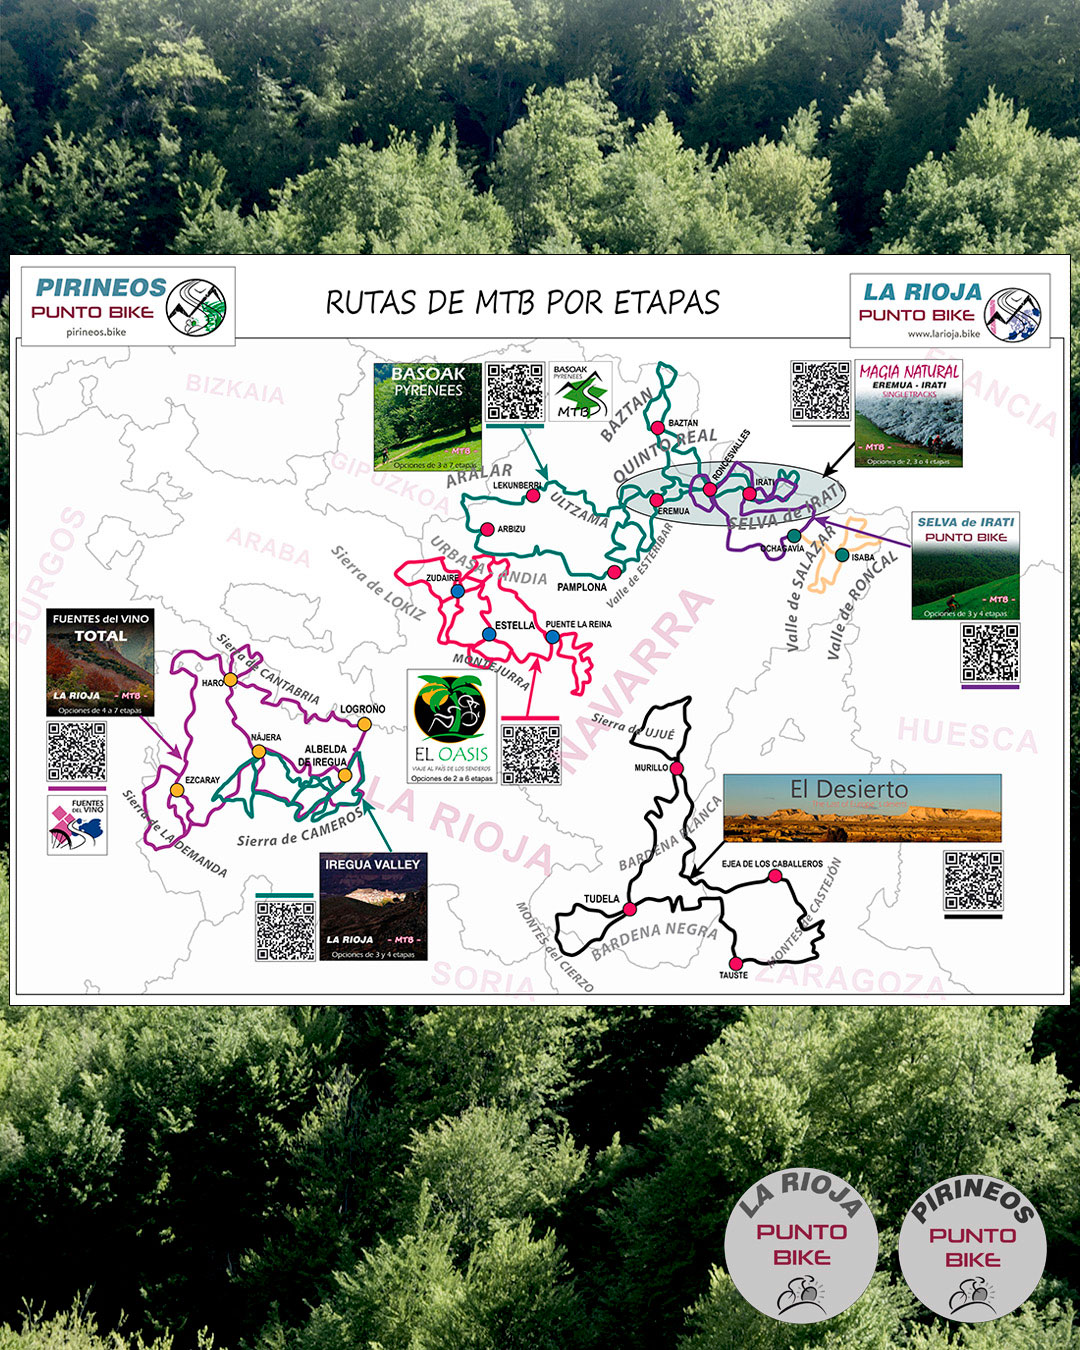 Mapa-Rutas-por-etapas-MTB-Pirineos-Punto-Bike